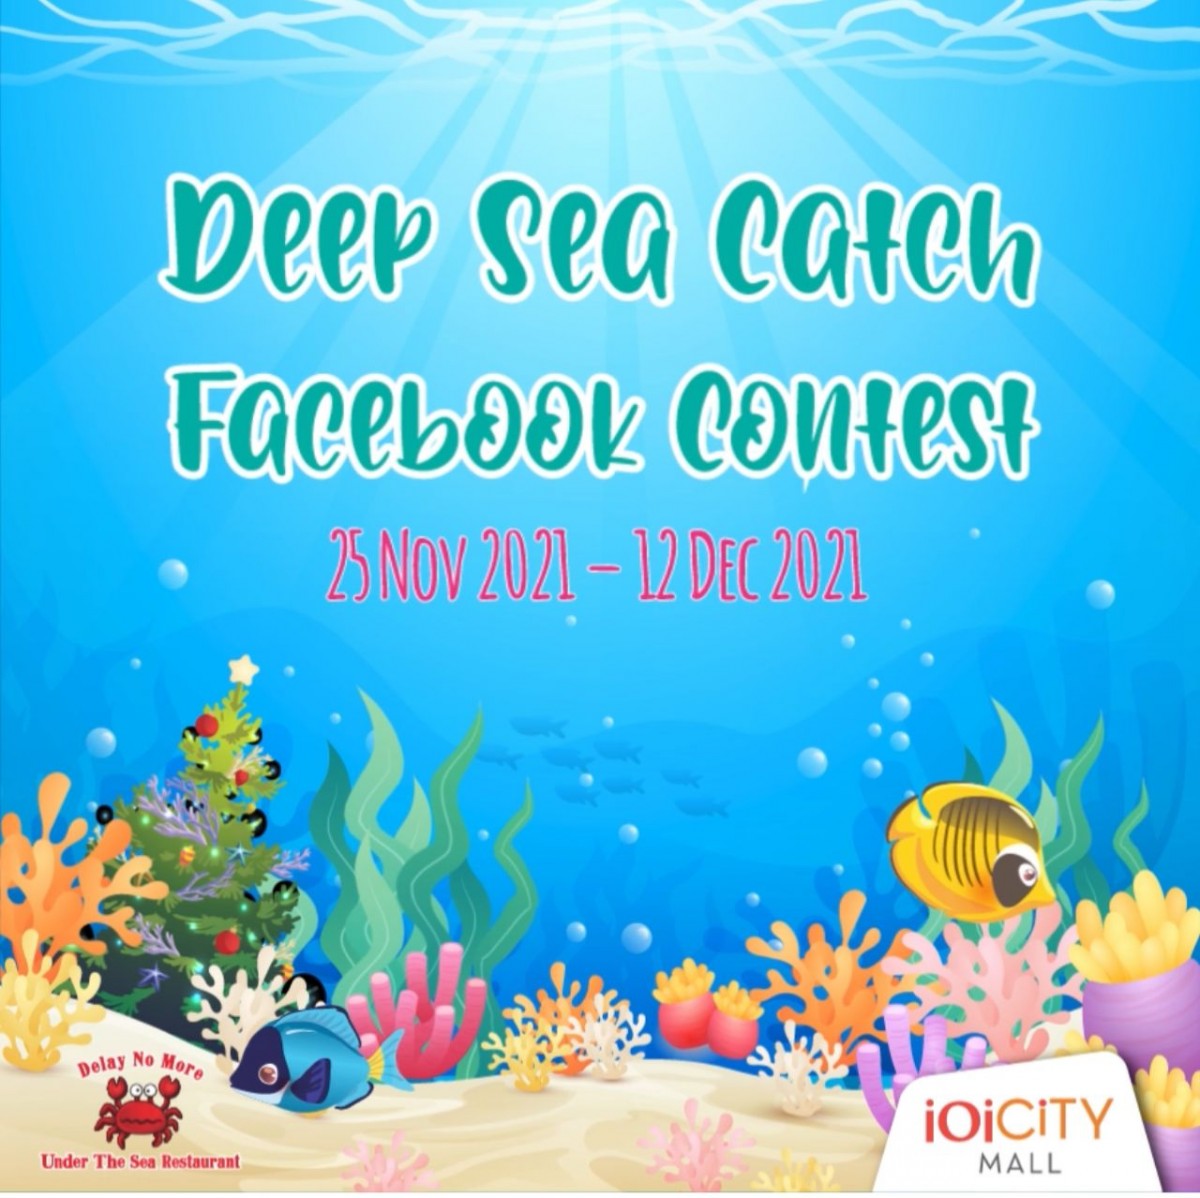 Deep Sea Catch Facebook Contest